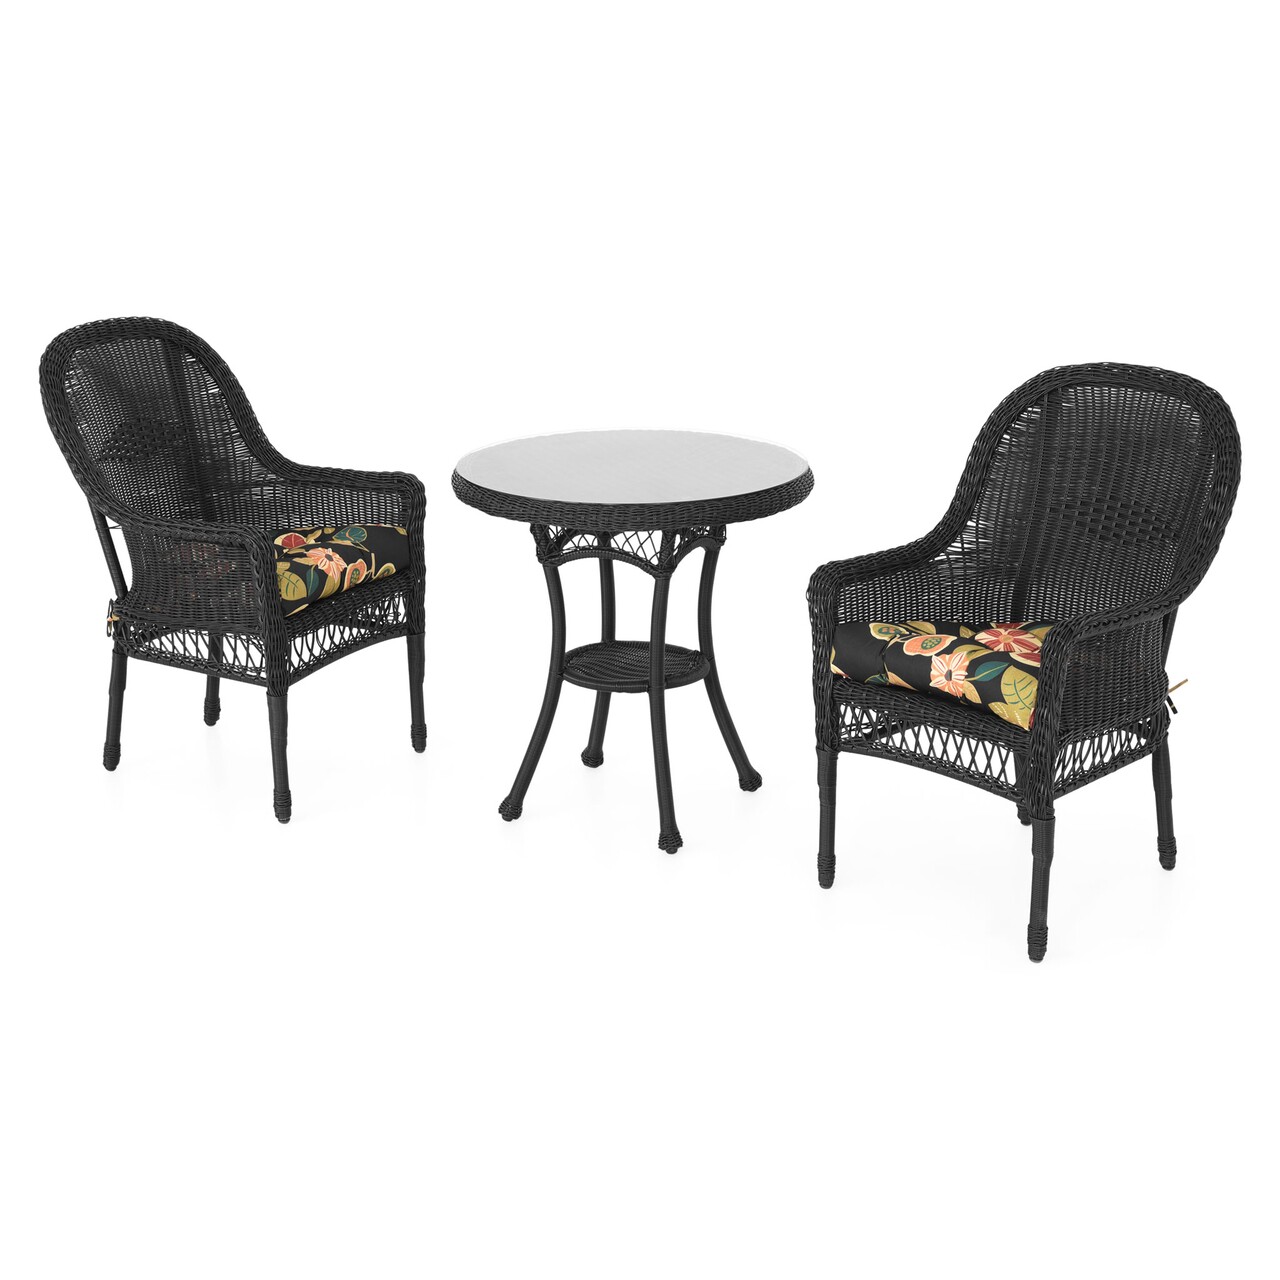 Maison susa 2 db szék és kerek asztal, acél, fekete/színes